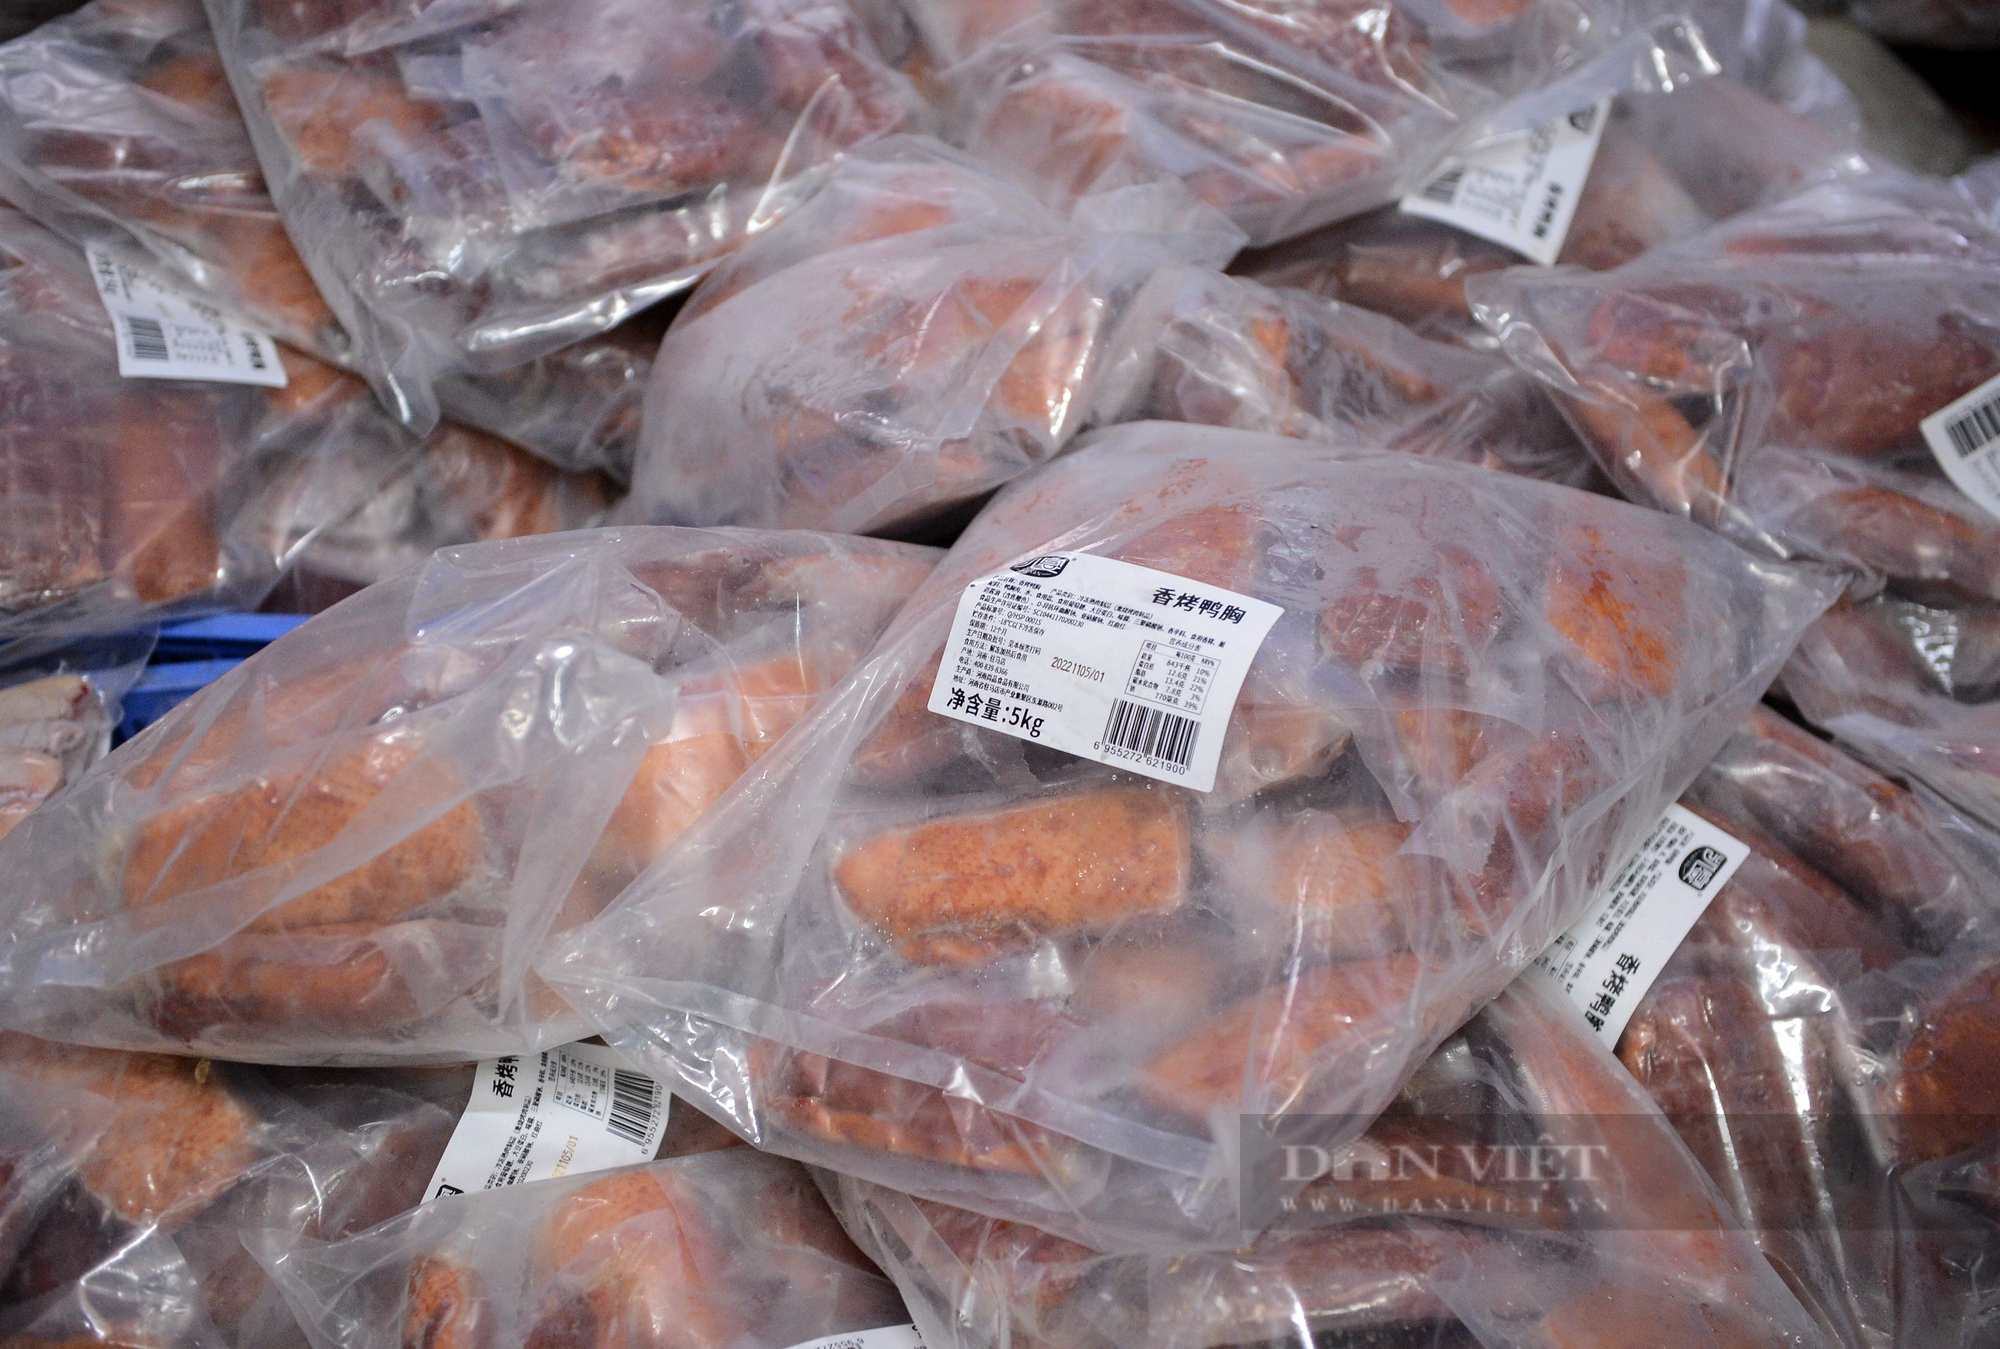 Phát hiện và thu giữ hơn 1 tấn thịt không rõ nguồn gốc tại Hà Nội - Ảnh 6.